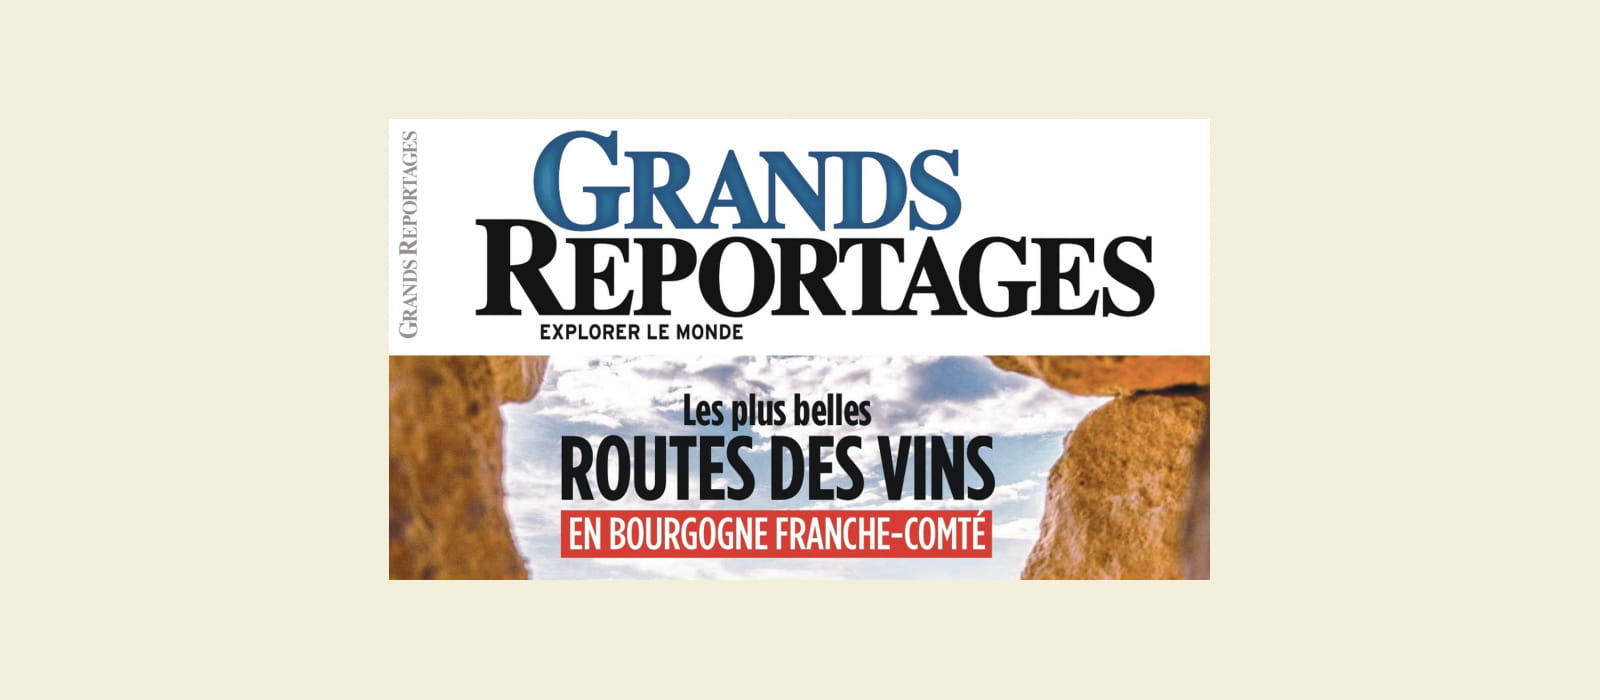 LES ROUTES DES VINS EN BOURGOGNE-FRANCHE-COMTE A L’HONNEUR